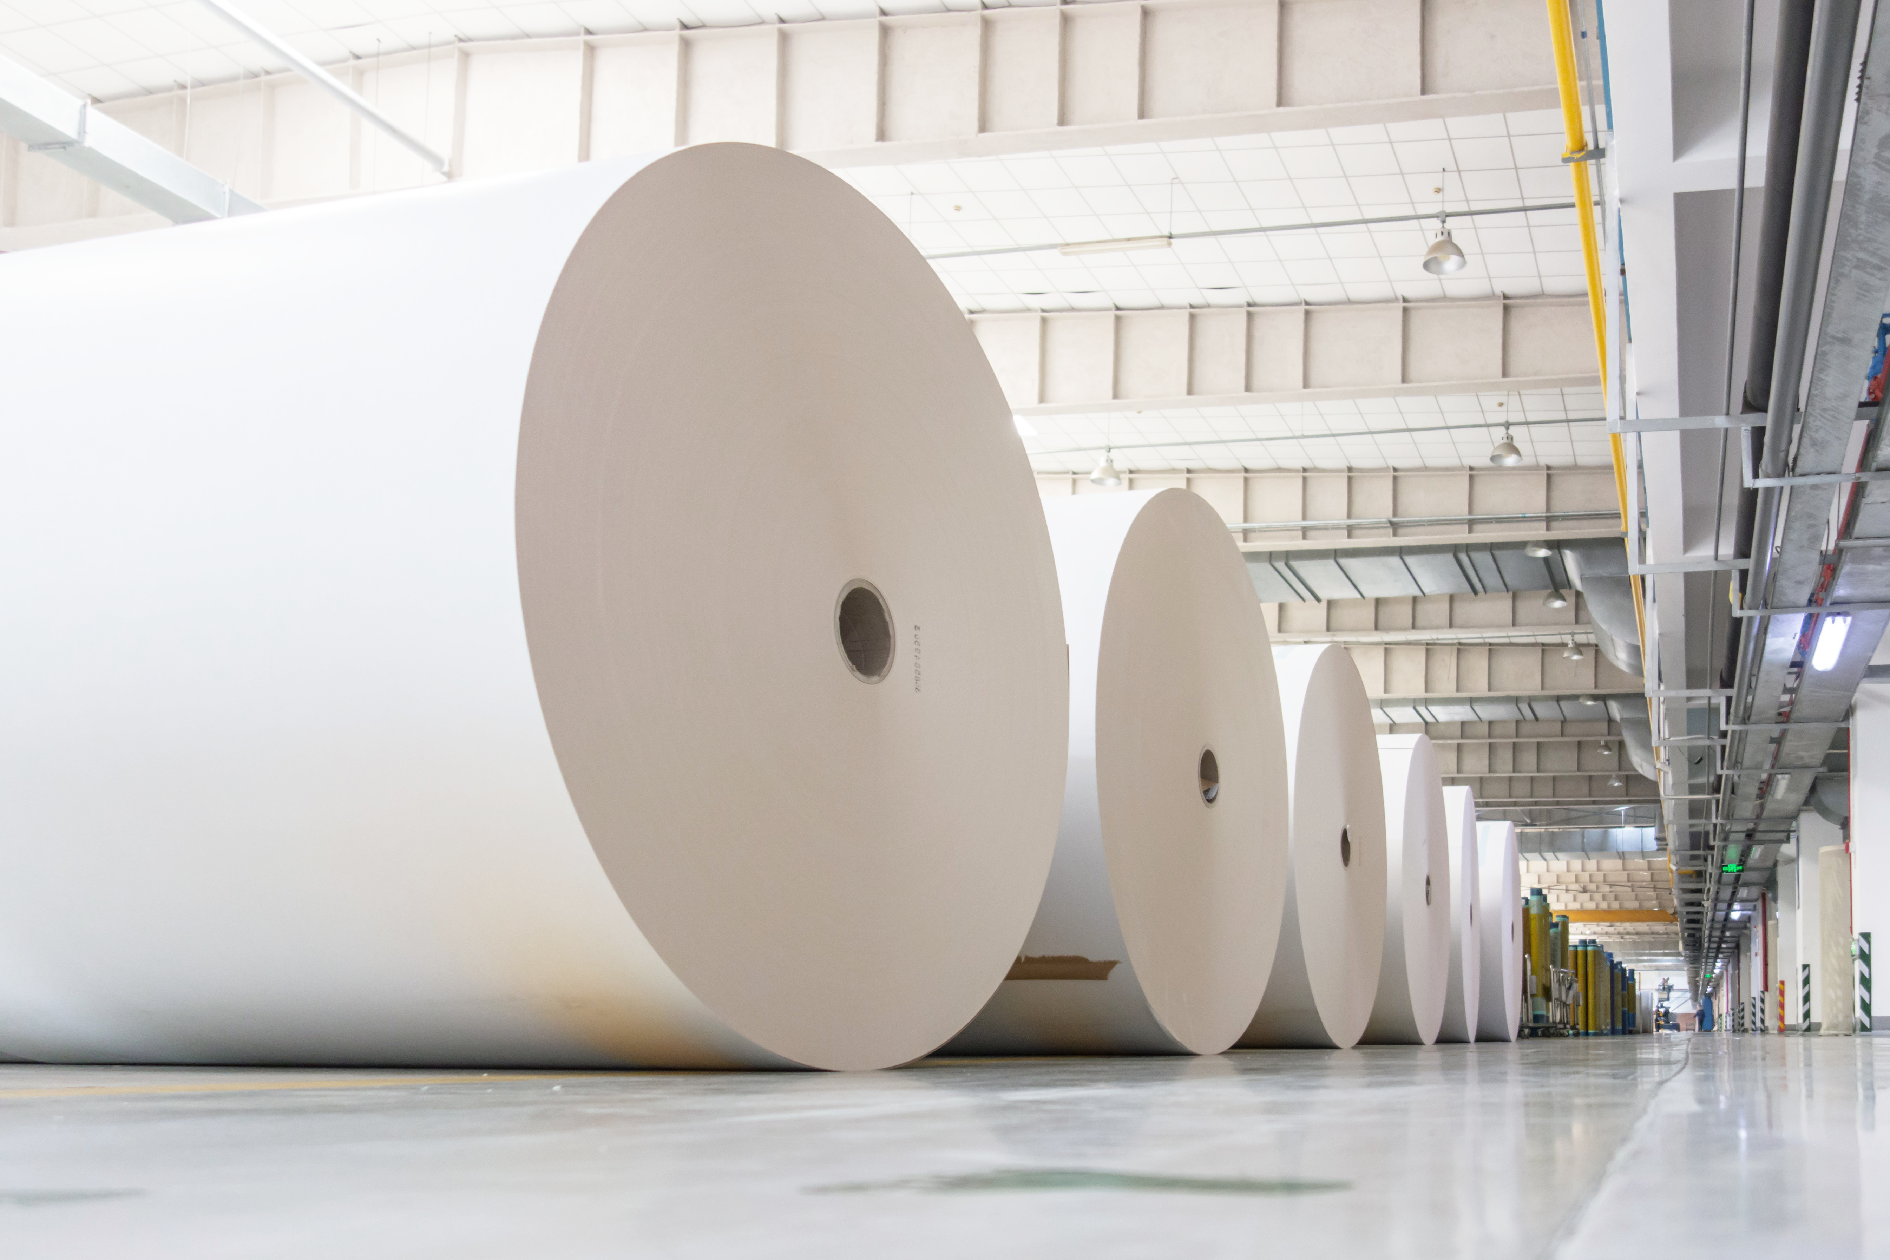 Aikolonin sellu- ja paperiteollisuuden muoviosat varmistavat laadukkaan paperin valmistamisen